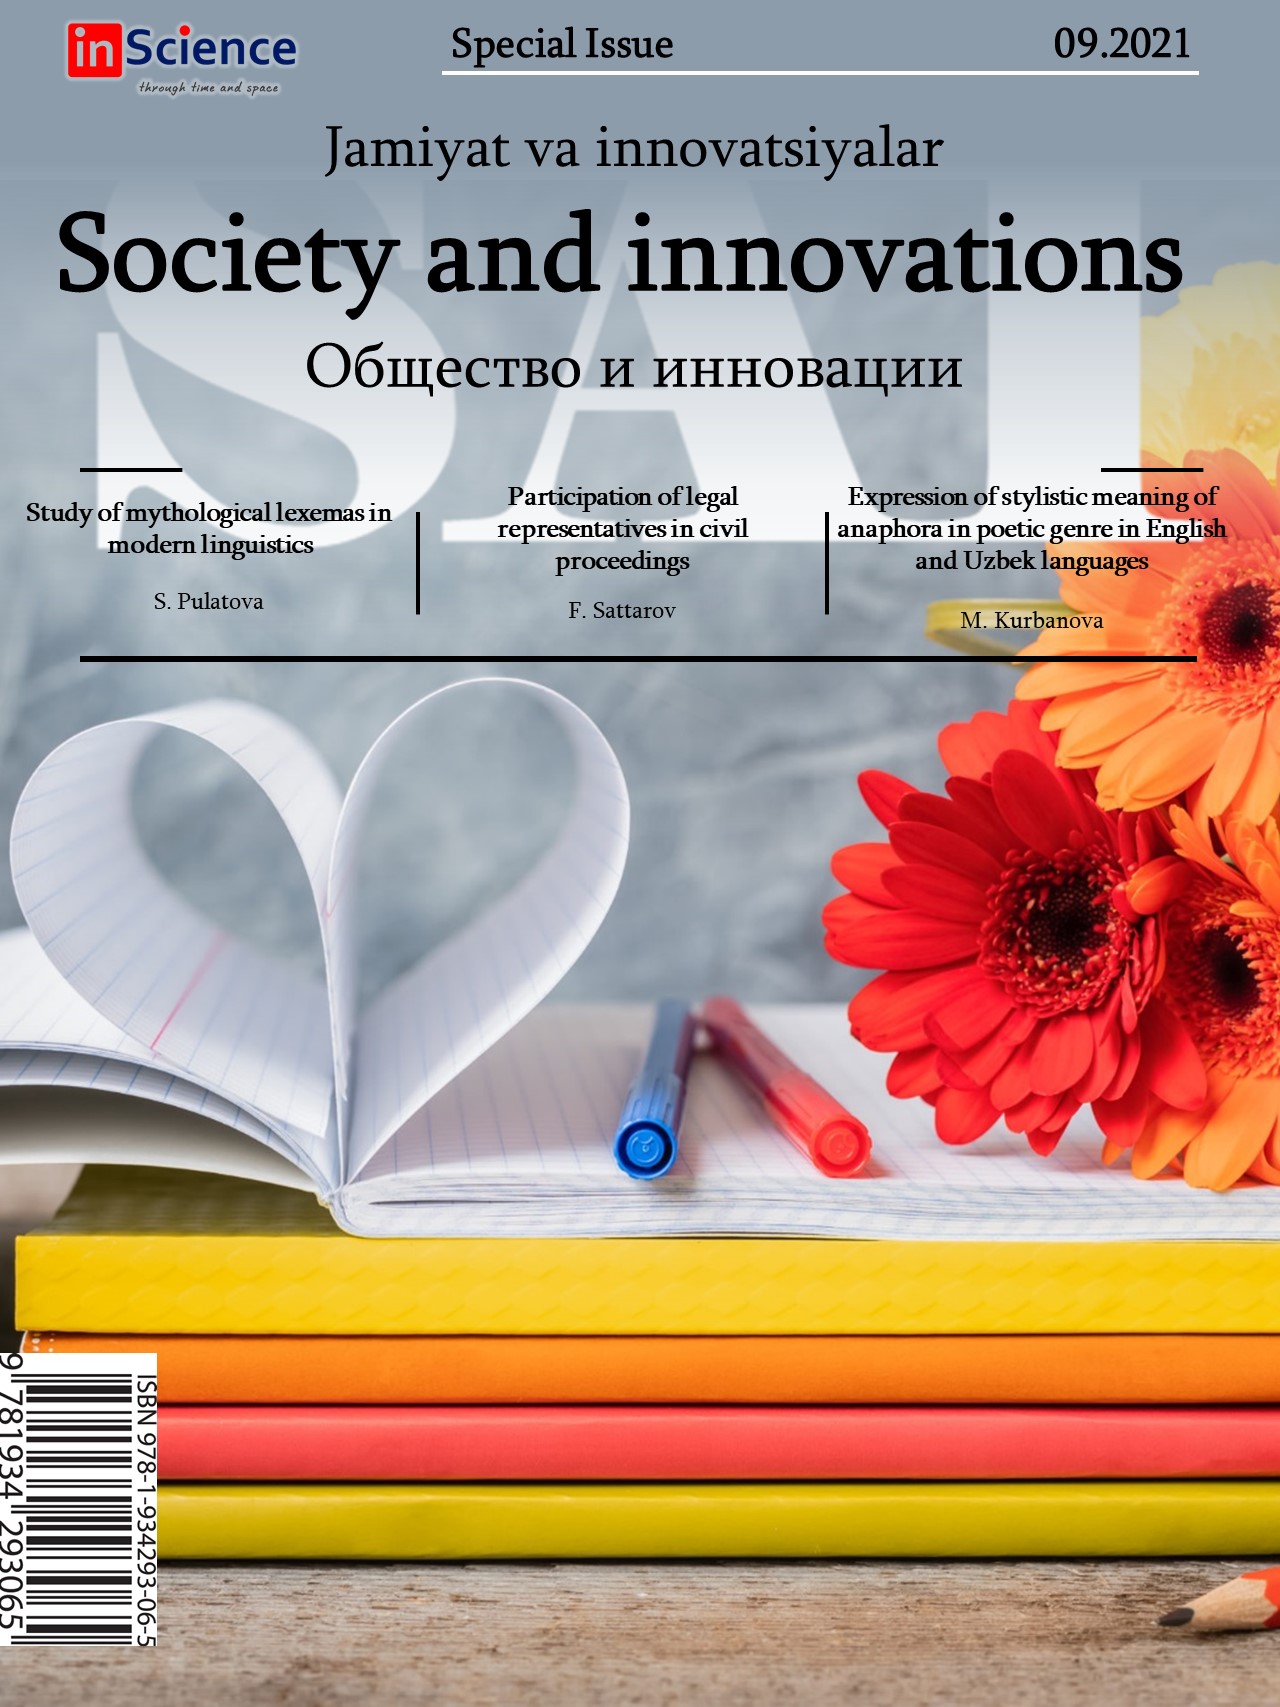 						Показать Том 2 № 9/S (2021): Спецвыпуск междисциплинарного электронного научного журнала «Общество и инновации»
					